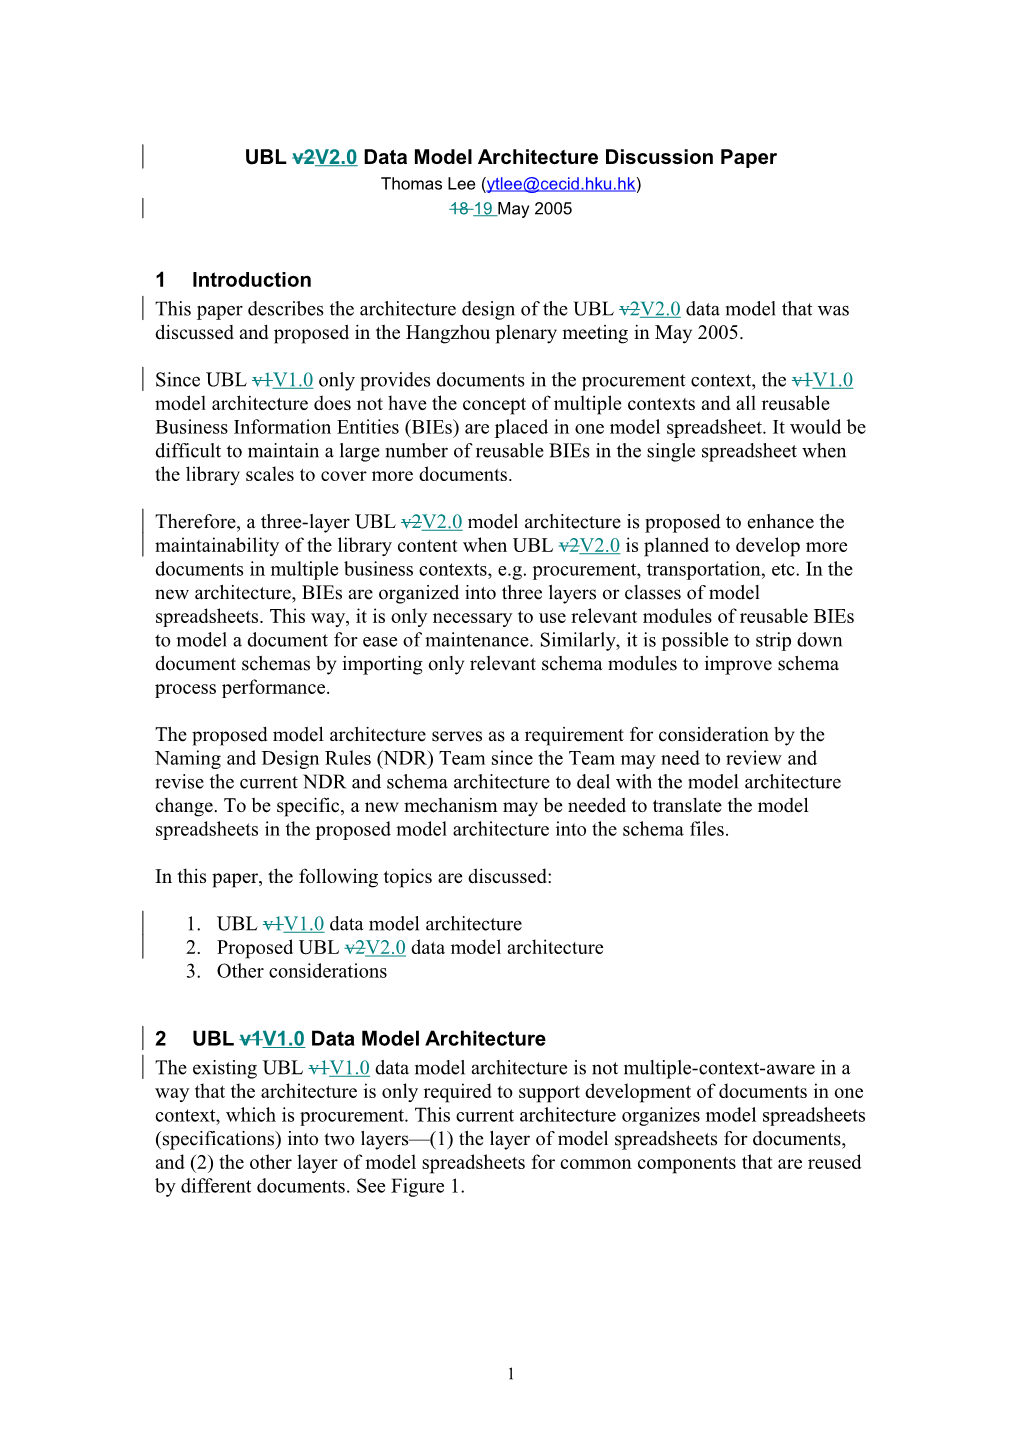 UBL V2v2.0 Data Model Architecture Discussion Paper